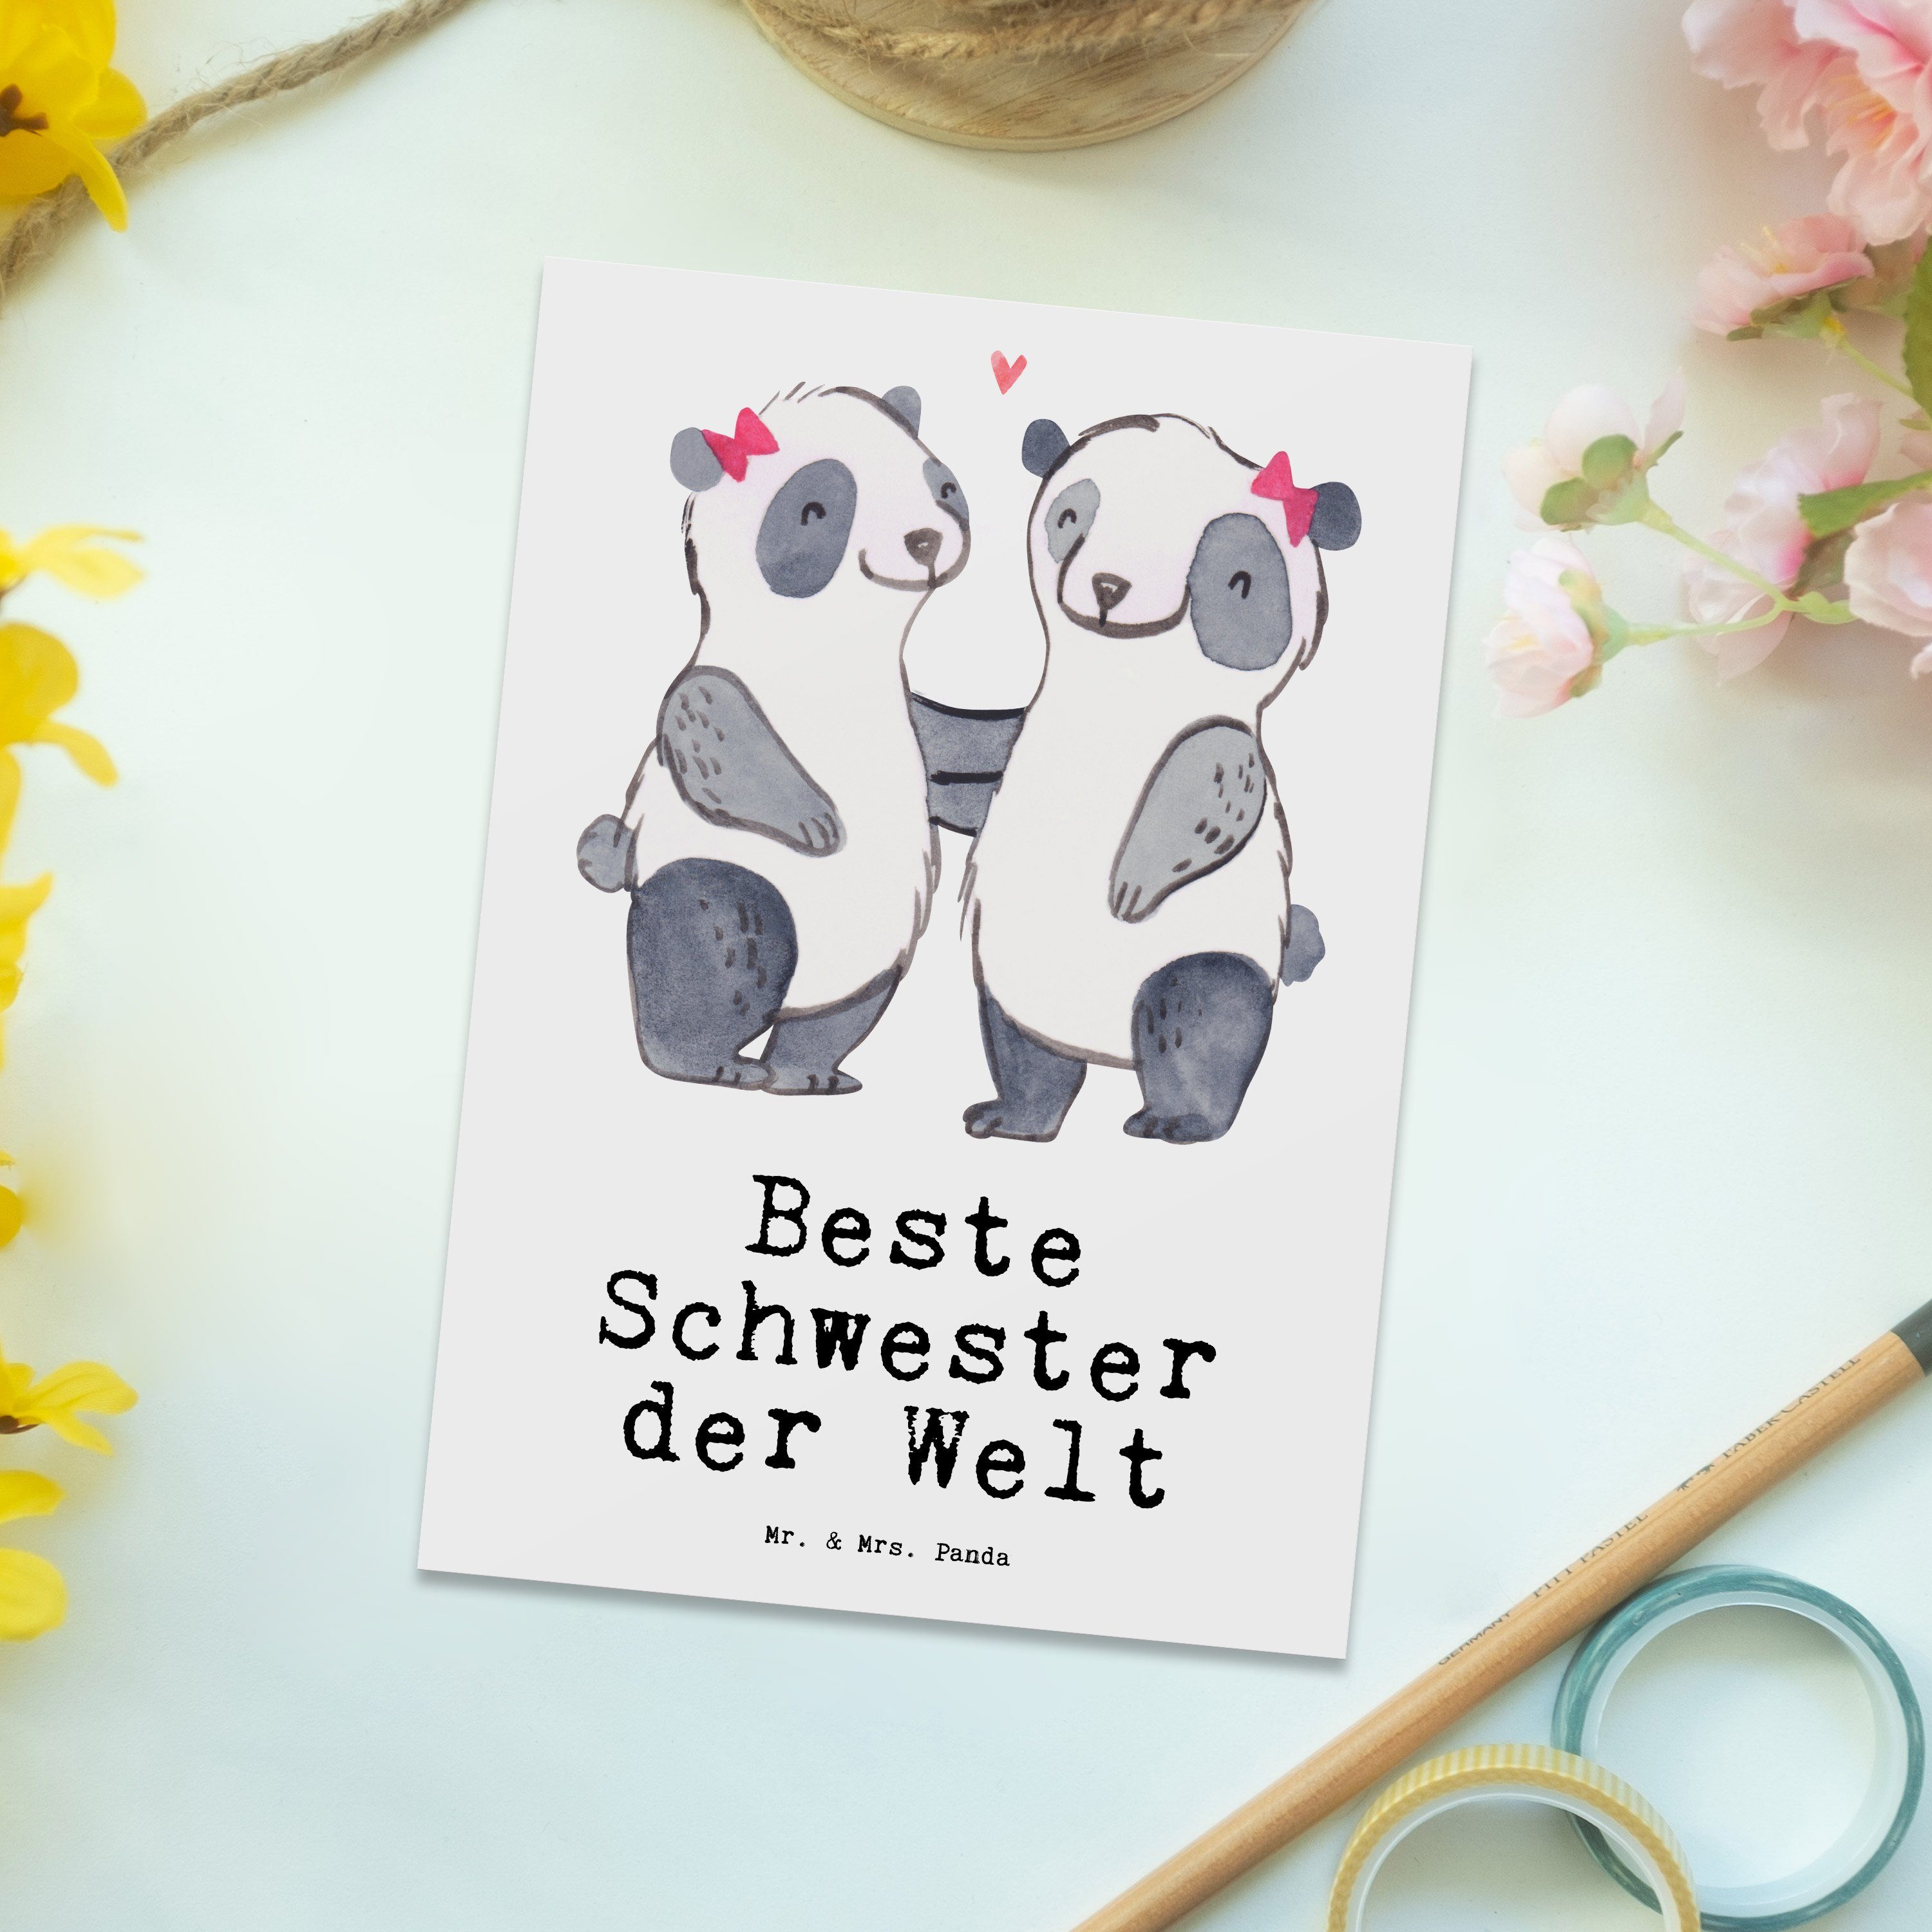 Mr. & Welt Panda Grußkarte, Weiß Schwester Mrs. der - Beste Panda für, Geschenk, - Postkarte Sch